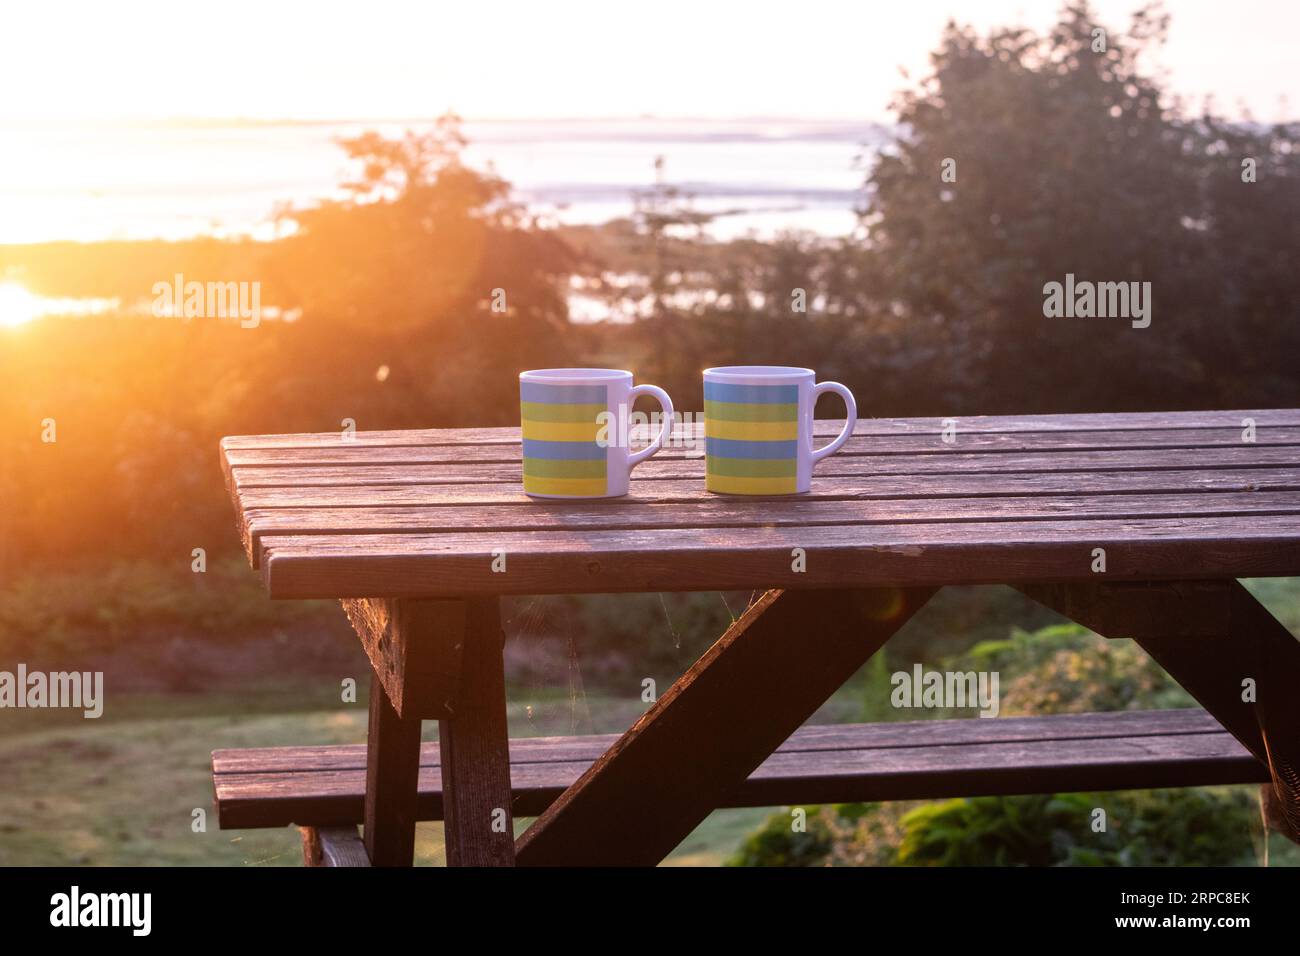 Deux tasses à café en plastique sur une table de pique-nique dans un camping au lever du soleil Banque D'Images